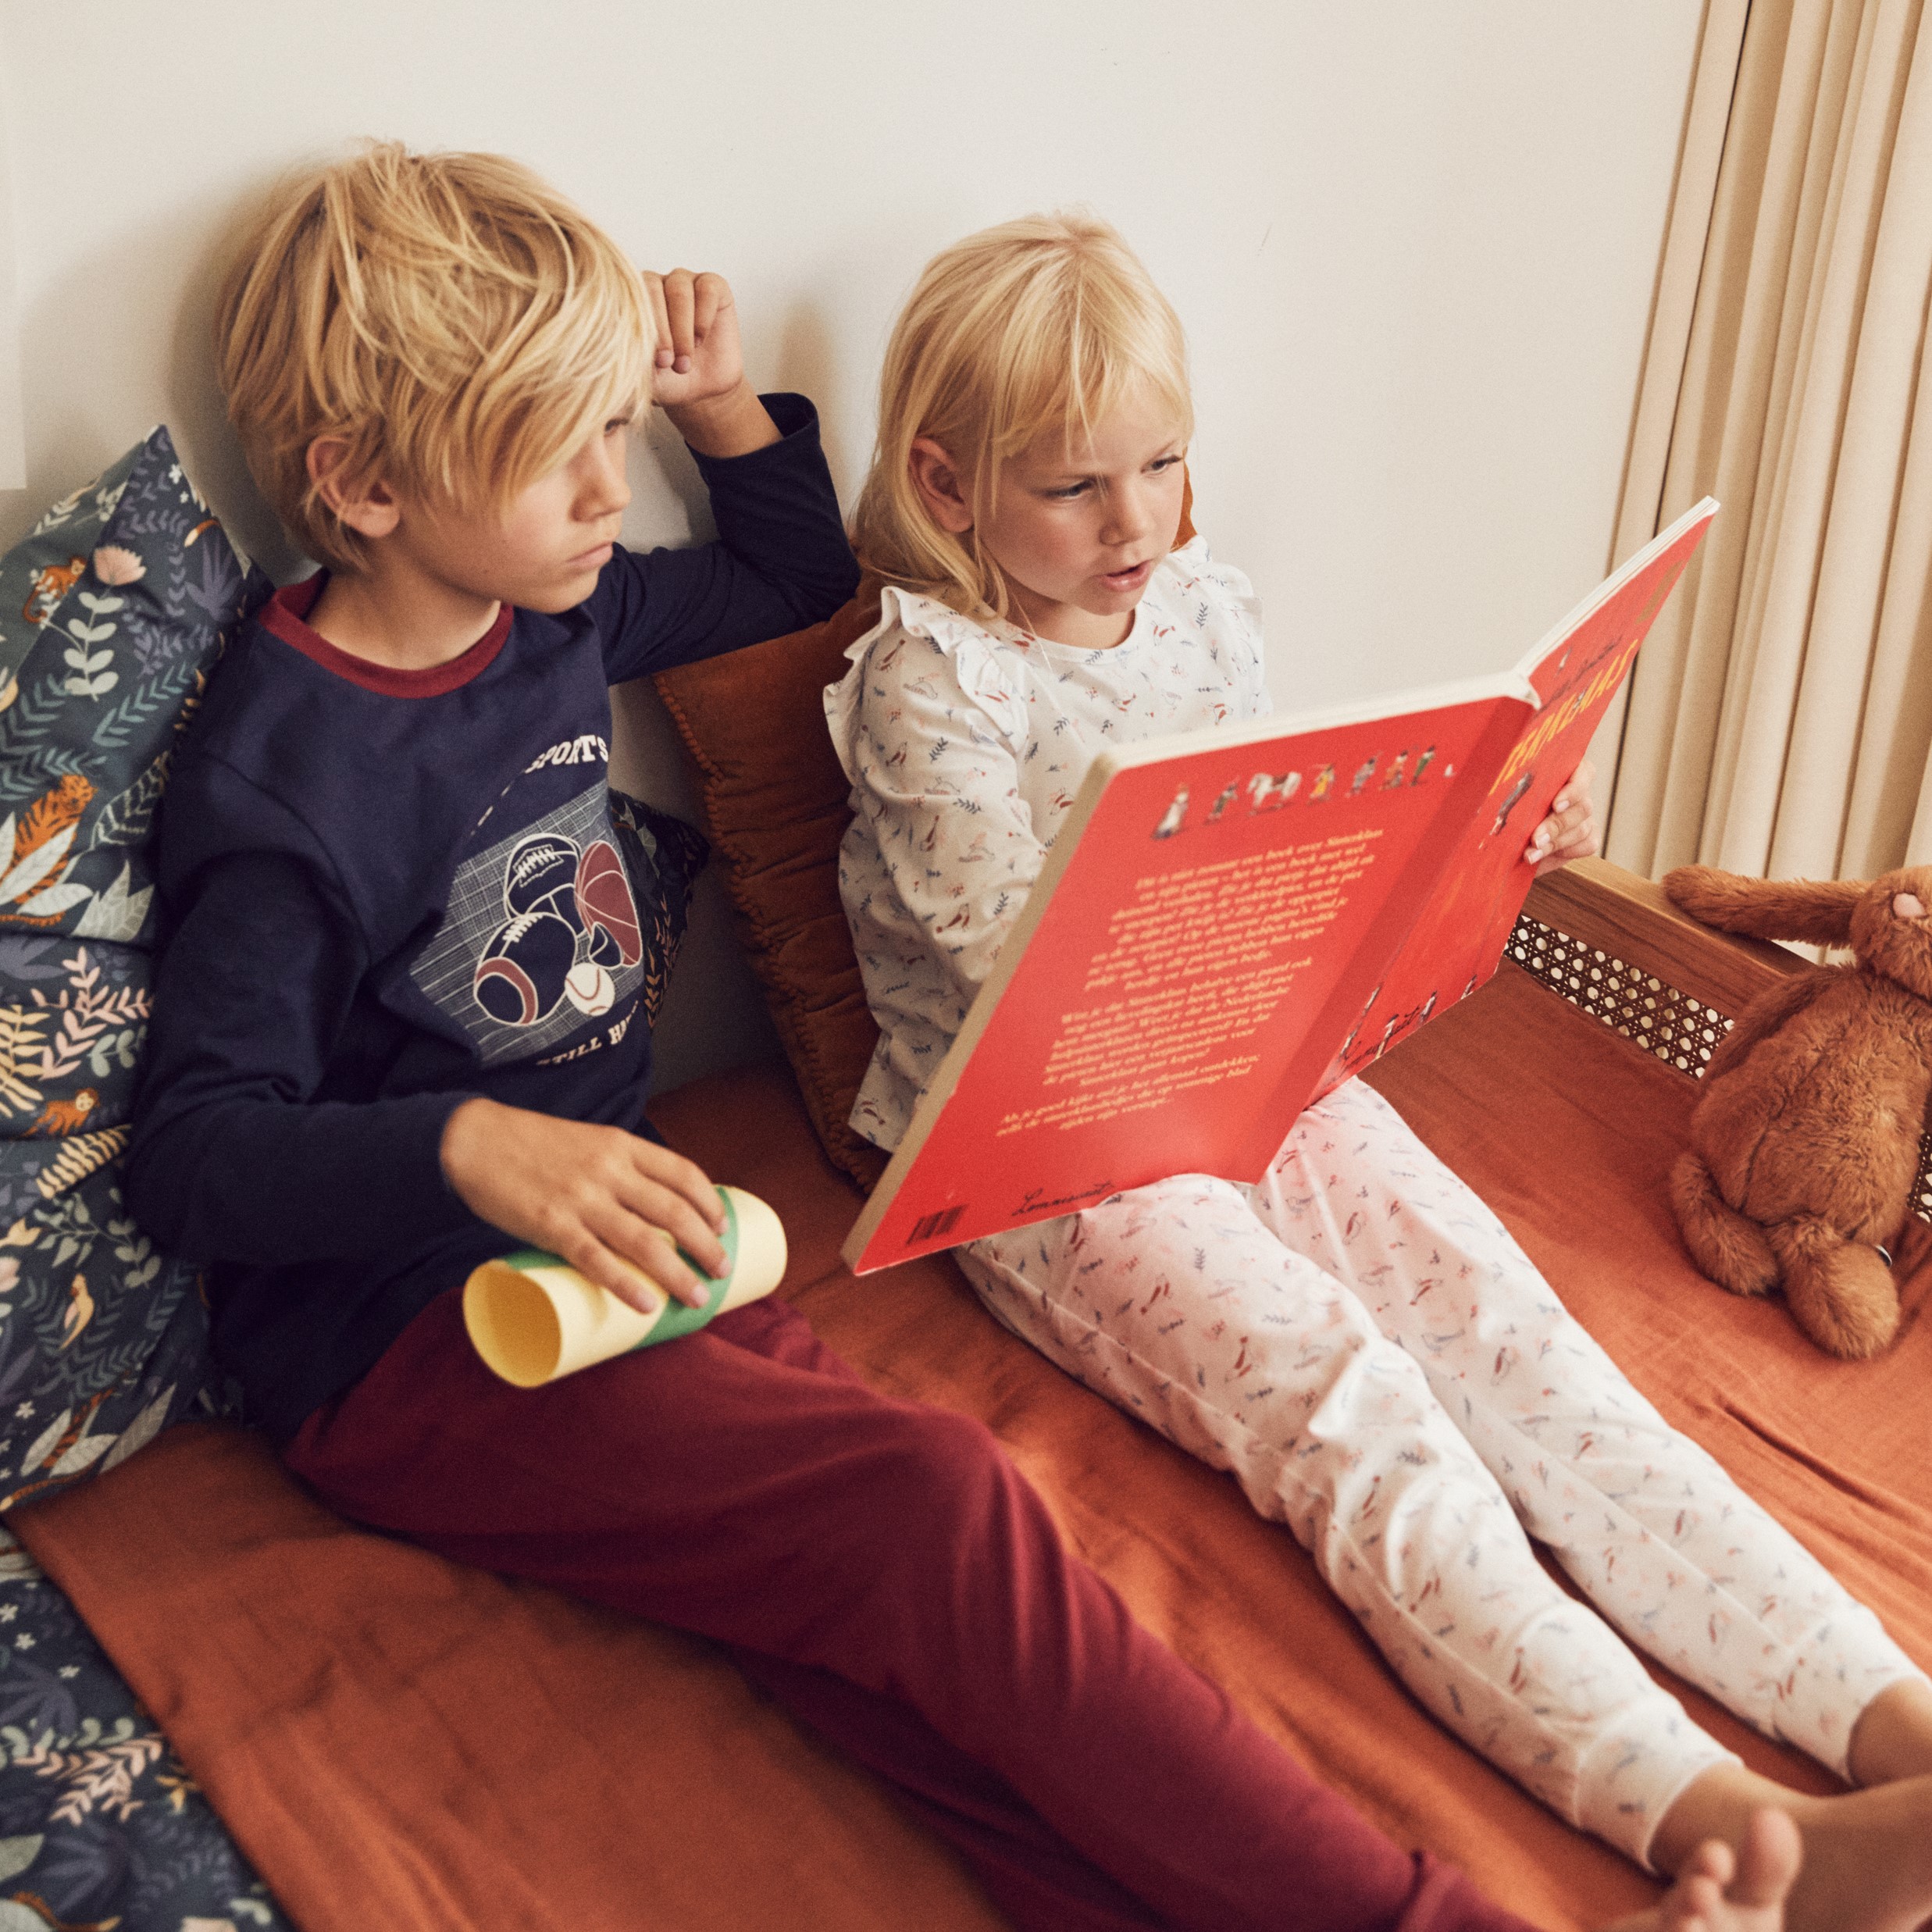 Kid Bébé Garçon Couché Sur Le Sol Et Lire Le Livre. Comment Faire